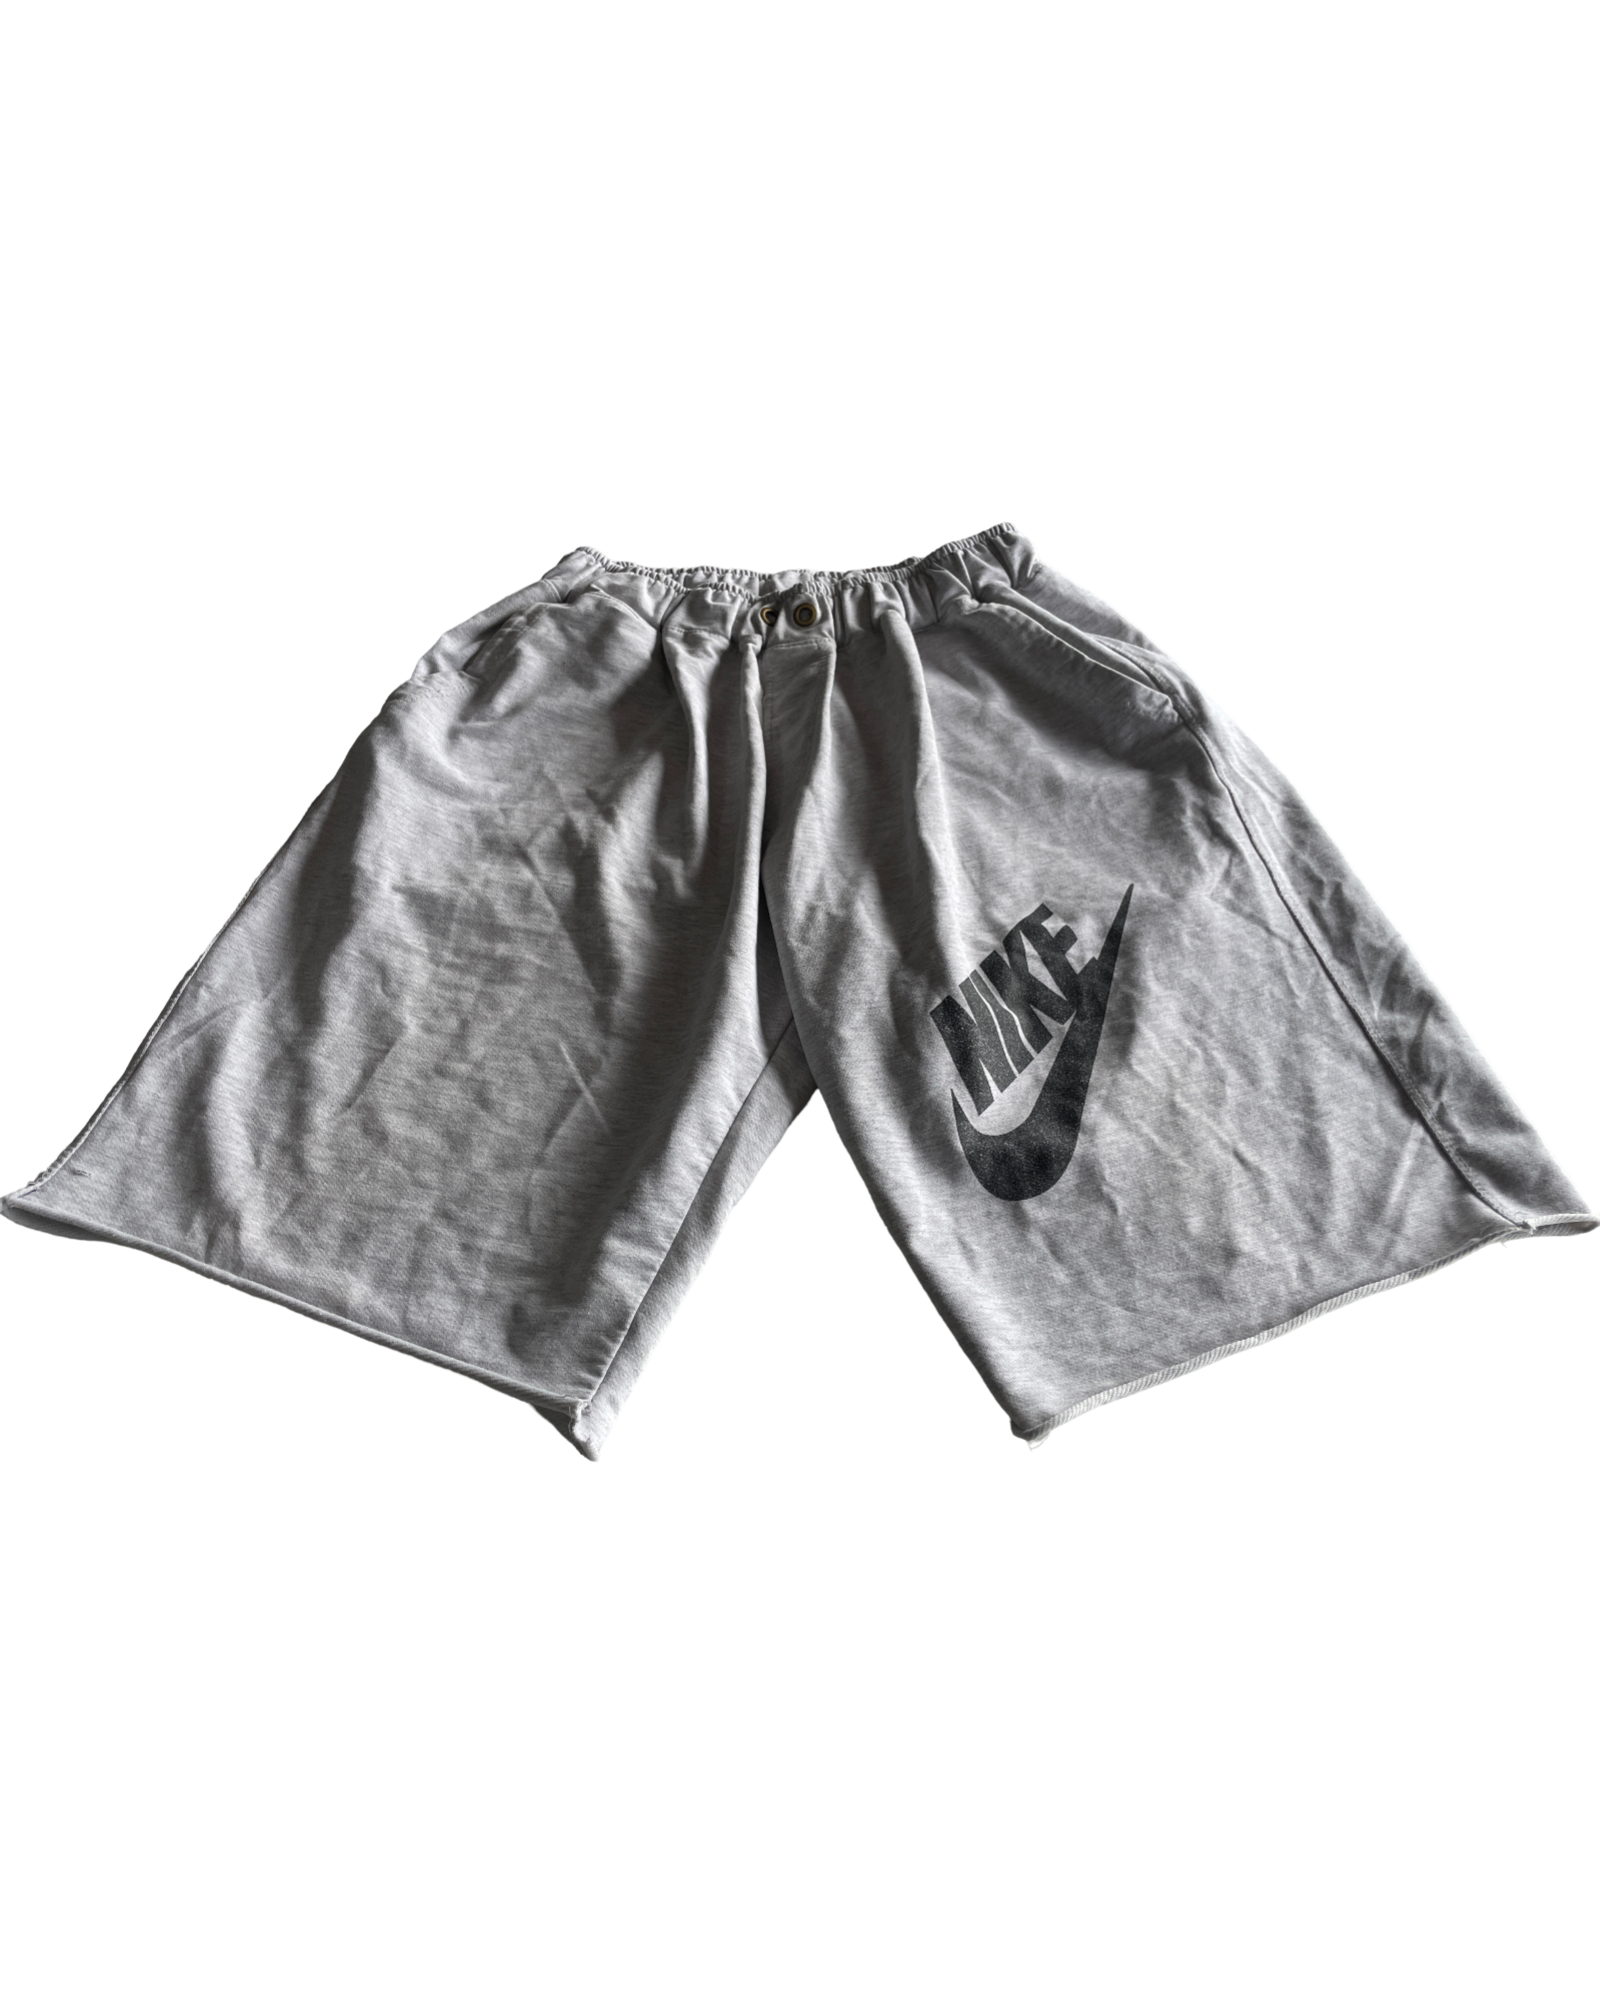 Vintage Grey Nike Fleece Shorts for Men - Size S/M (SKU 4626)